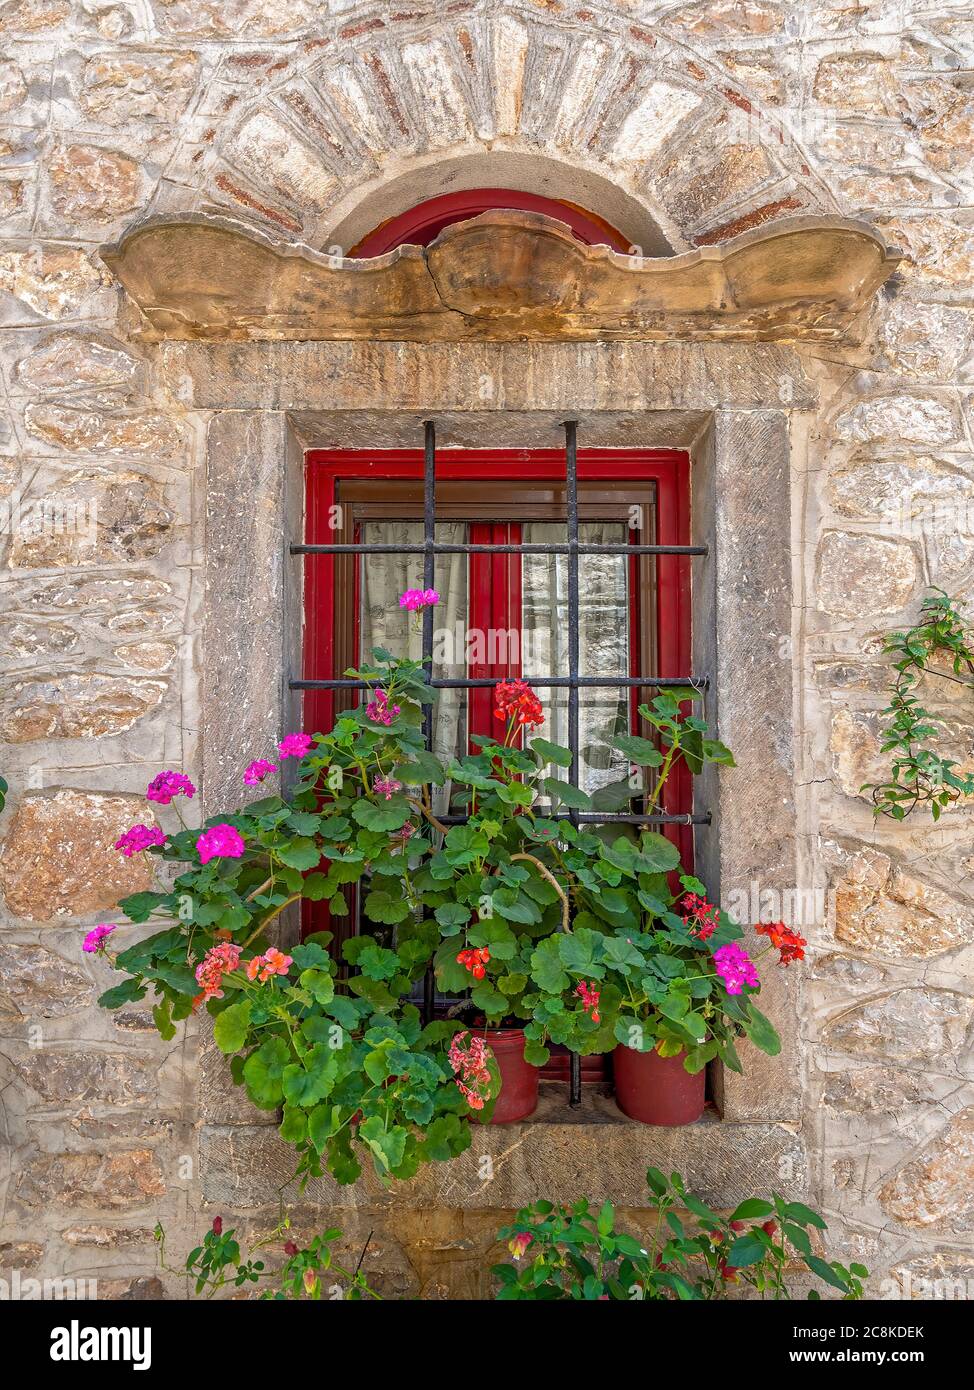 Éphémère et éternelle. Fleurs de géranium colorées sur une fenêtre vieille de plusieurs siècles. Promenade dans les ruelles médiévales de Pyrgi, île de Chios, Grèce Banque D'Images